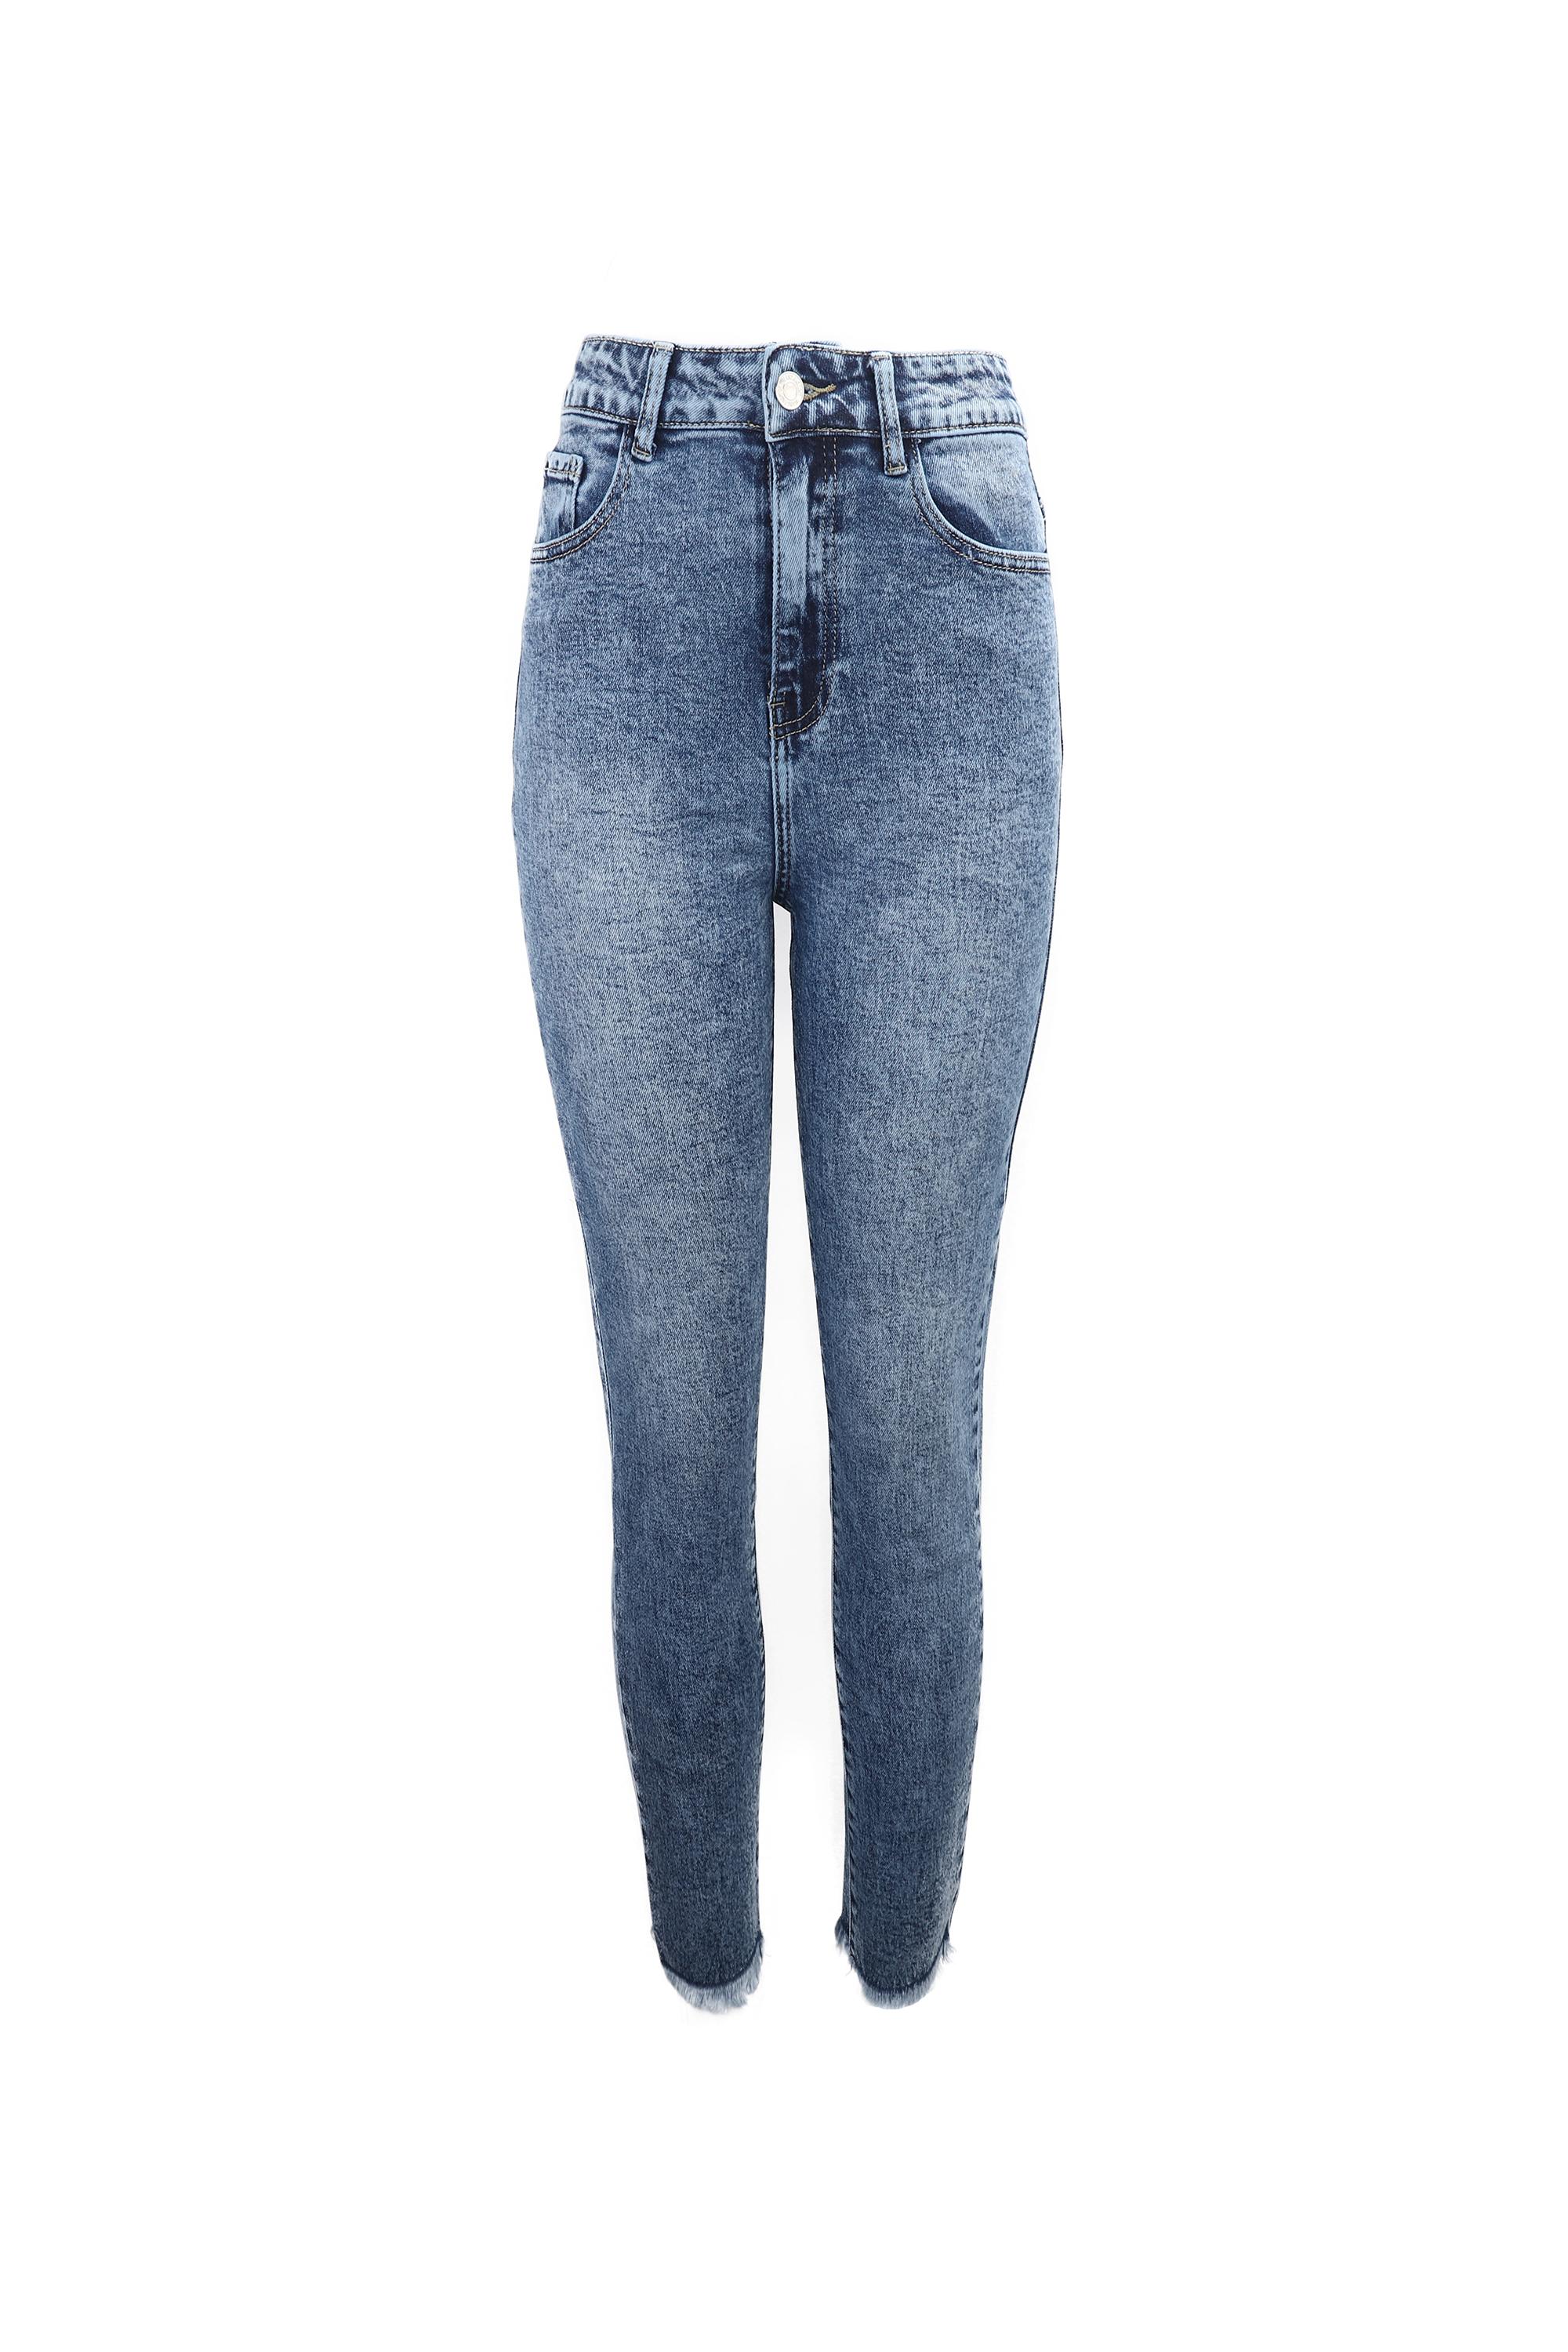 Jeans Femme Bleu Phanie Mode D050 #c Efashion Paris